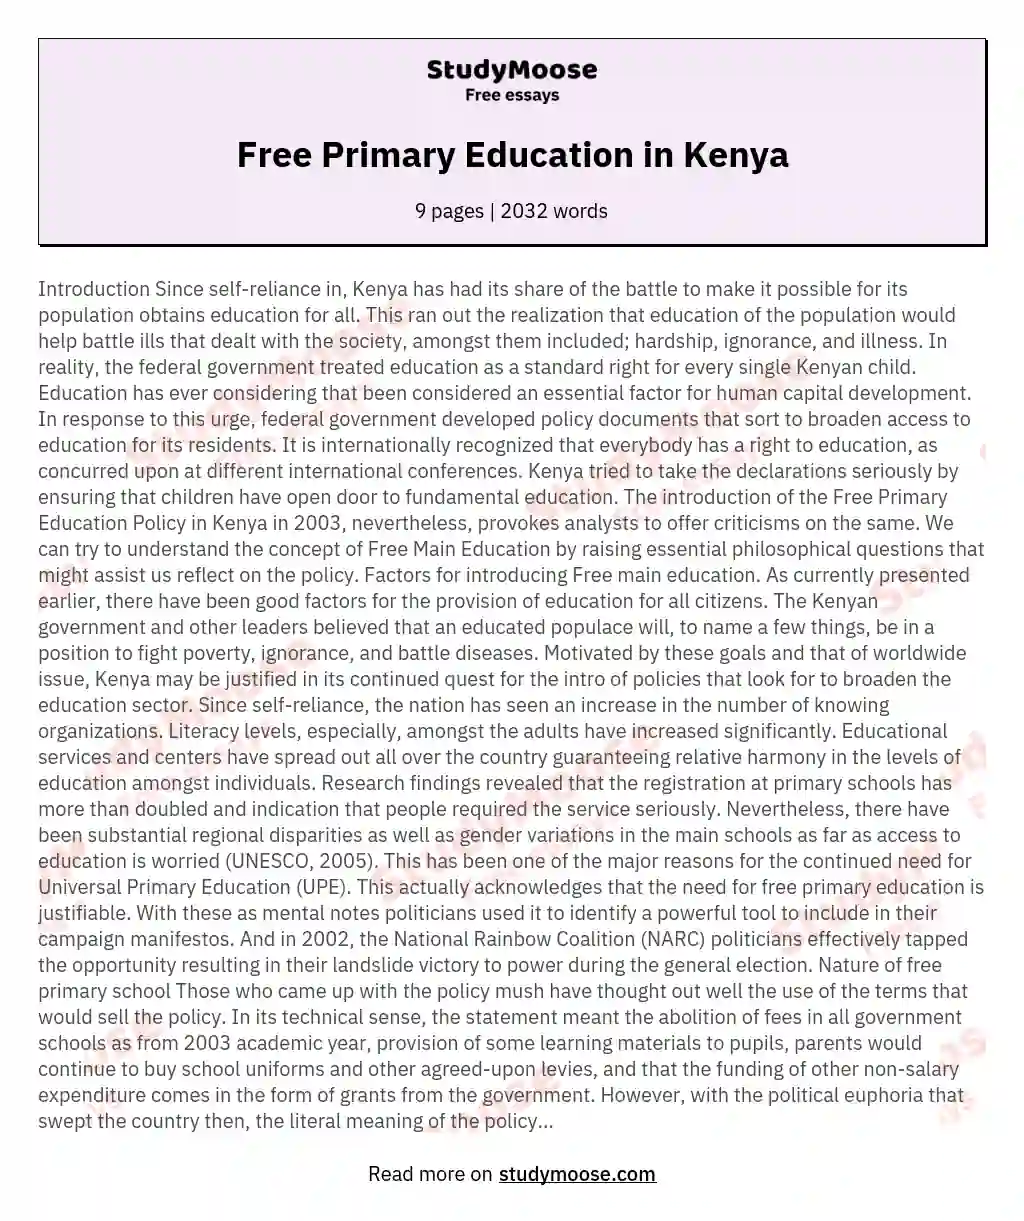 Free Primary Education in Kenya